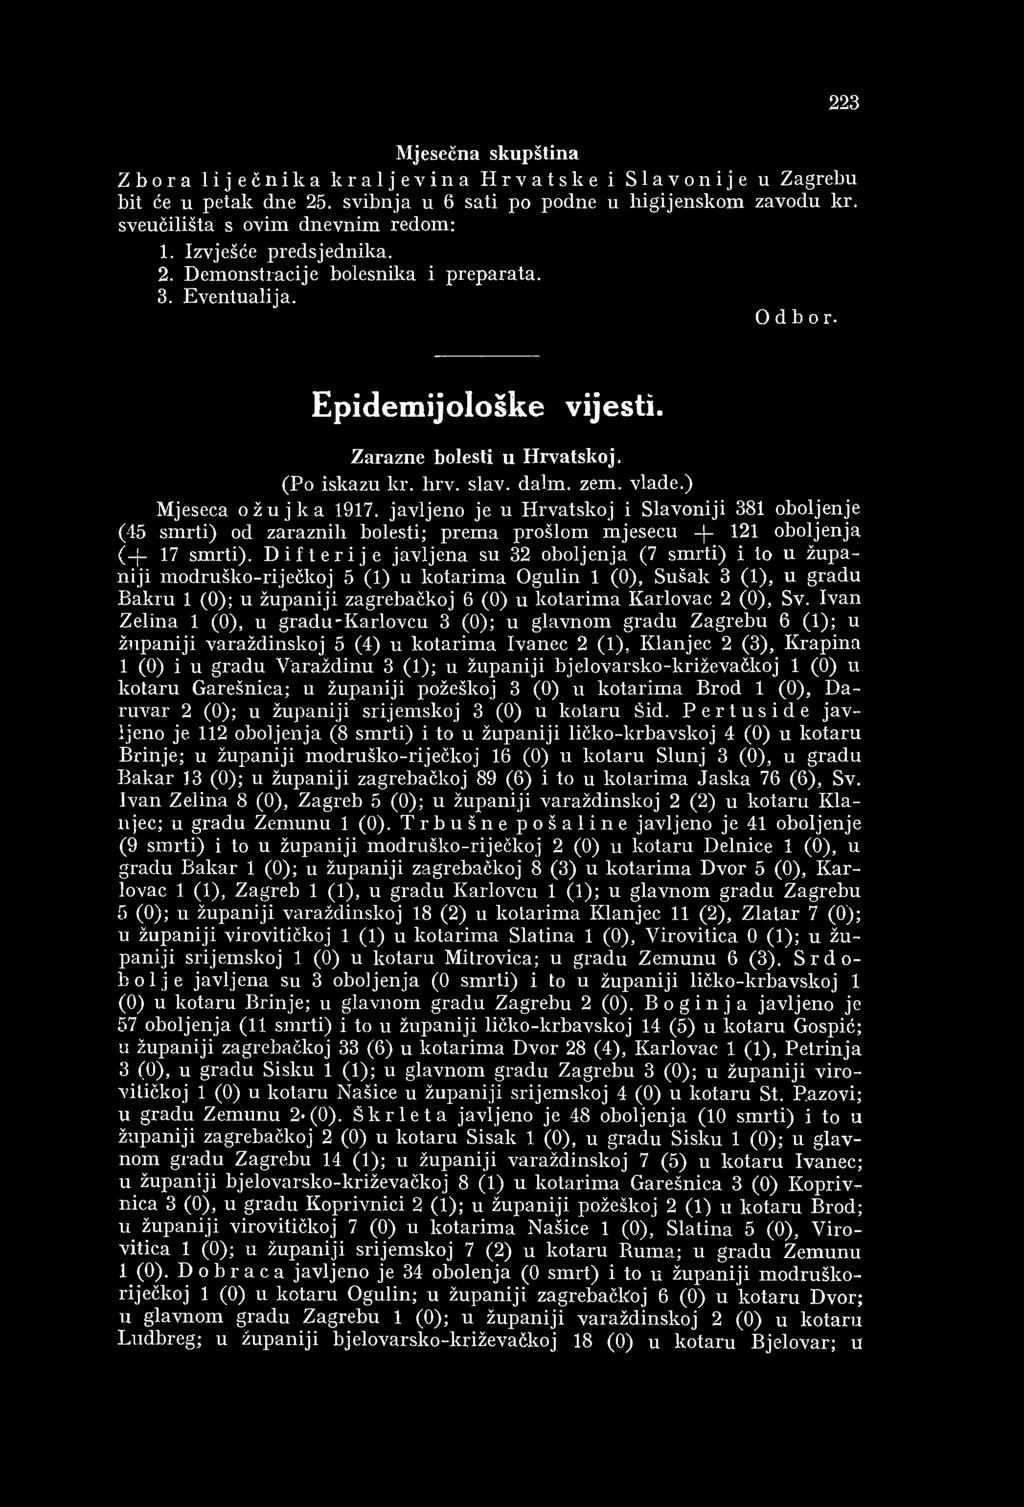 ) Mjeseca ožujka 1917. javljeno je u H rvatskoj i Slavoniji 381 oboljenje (45 sm rti) od zaraznih bolesti; prem a prošlom m jesecu - - 121 oboljenja (-j- 17 sm rti).